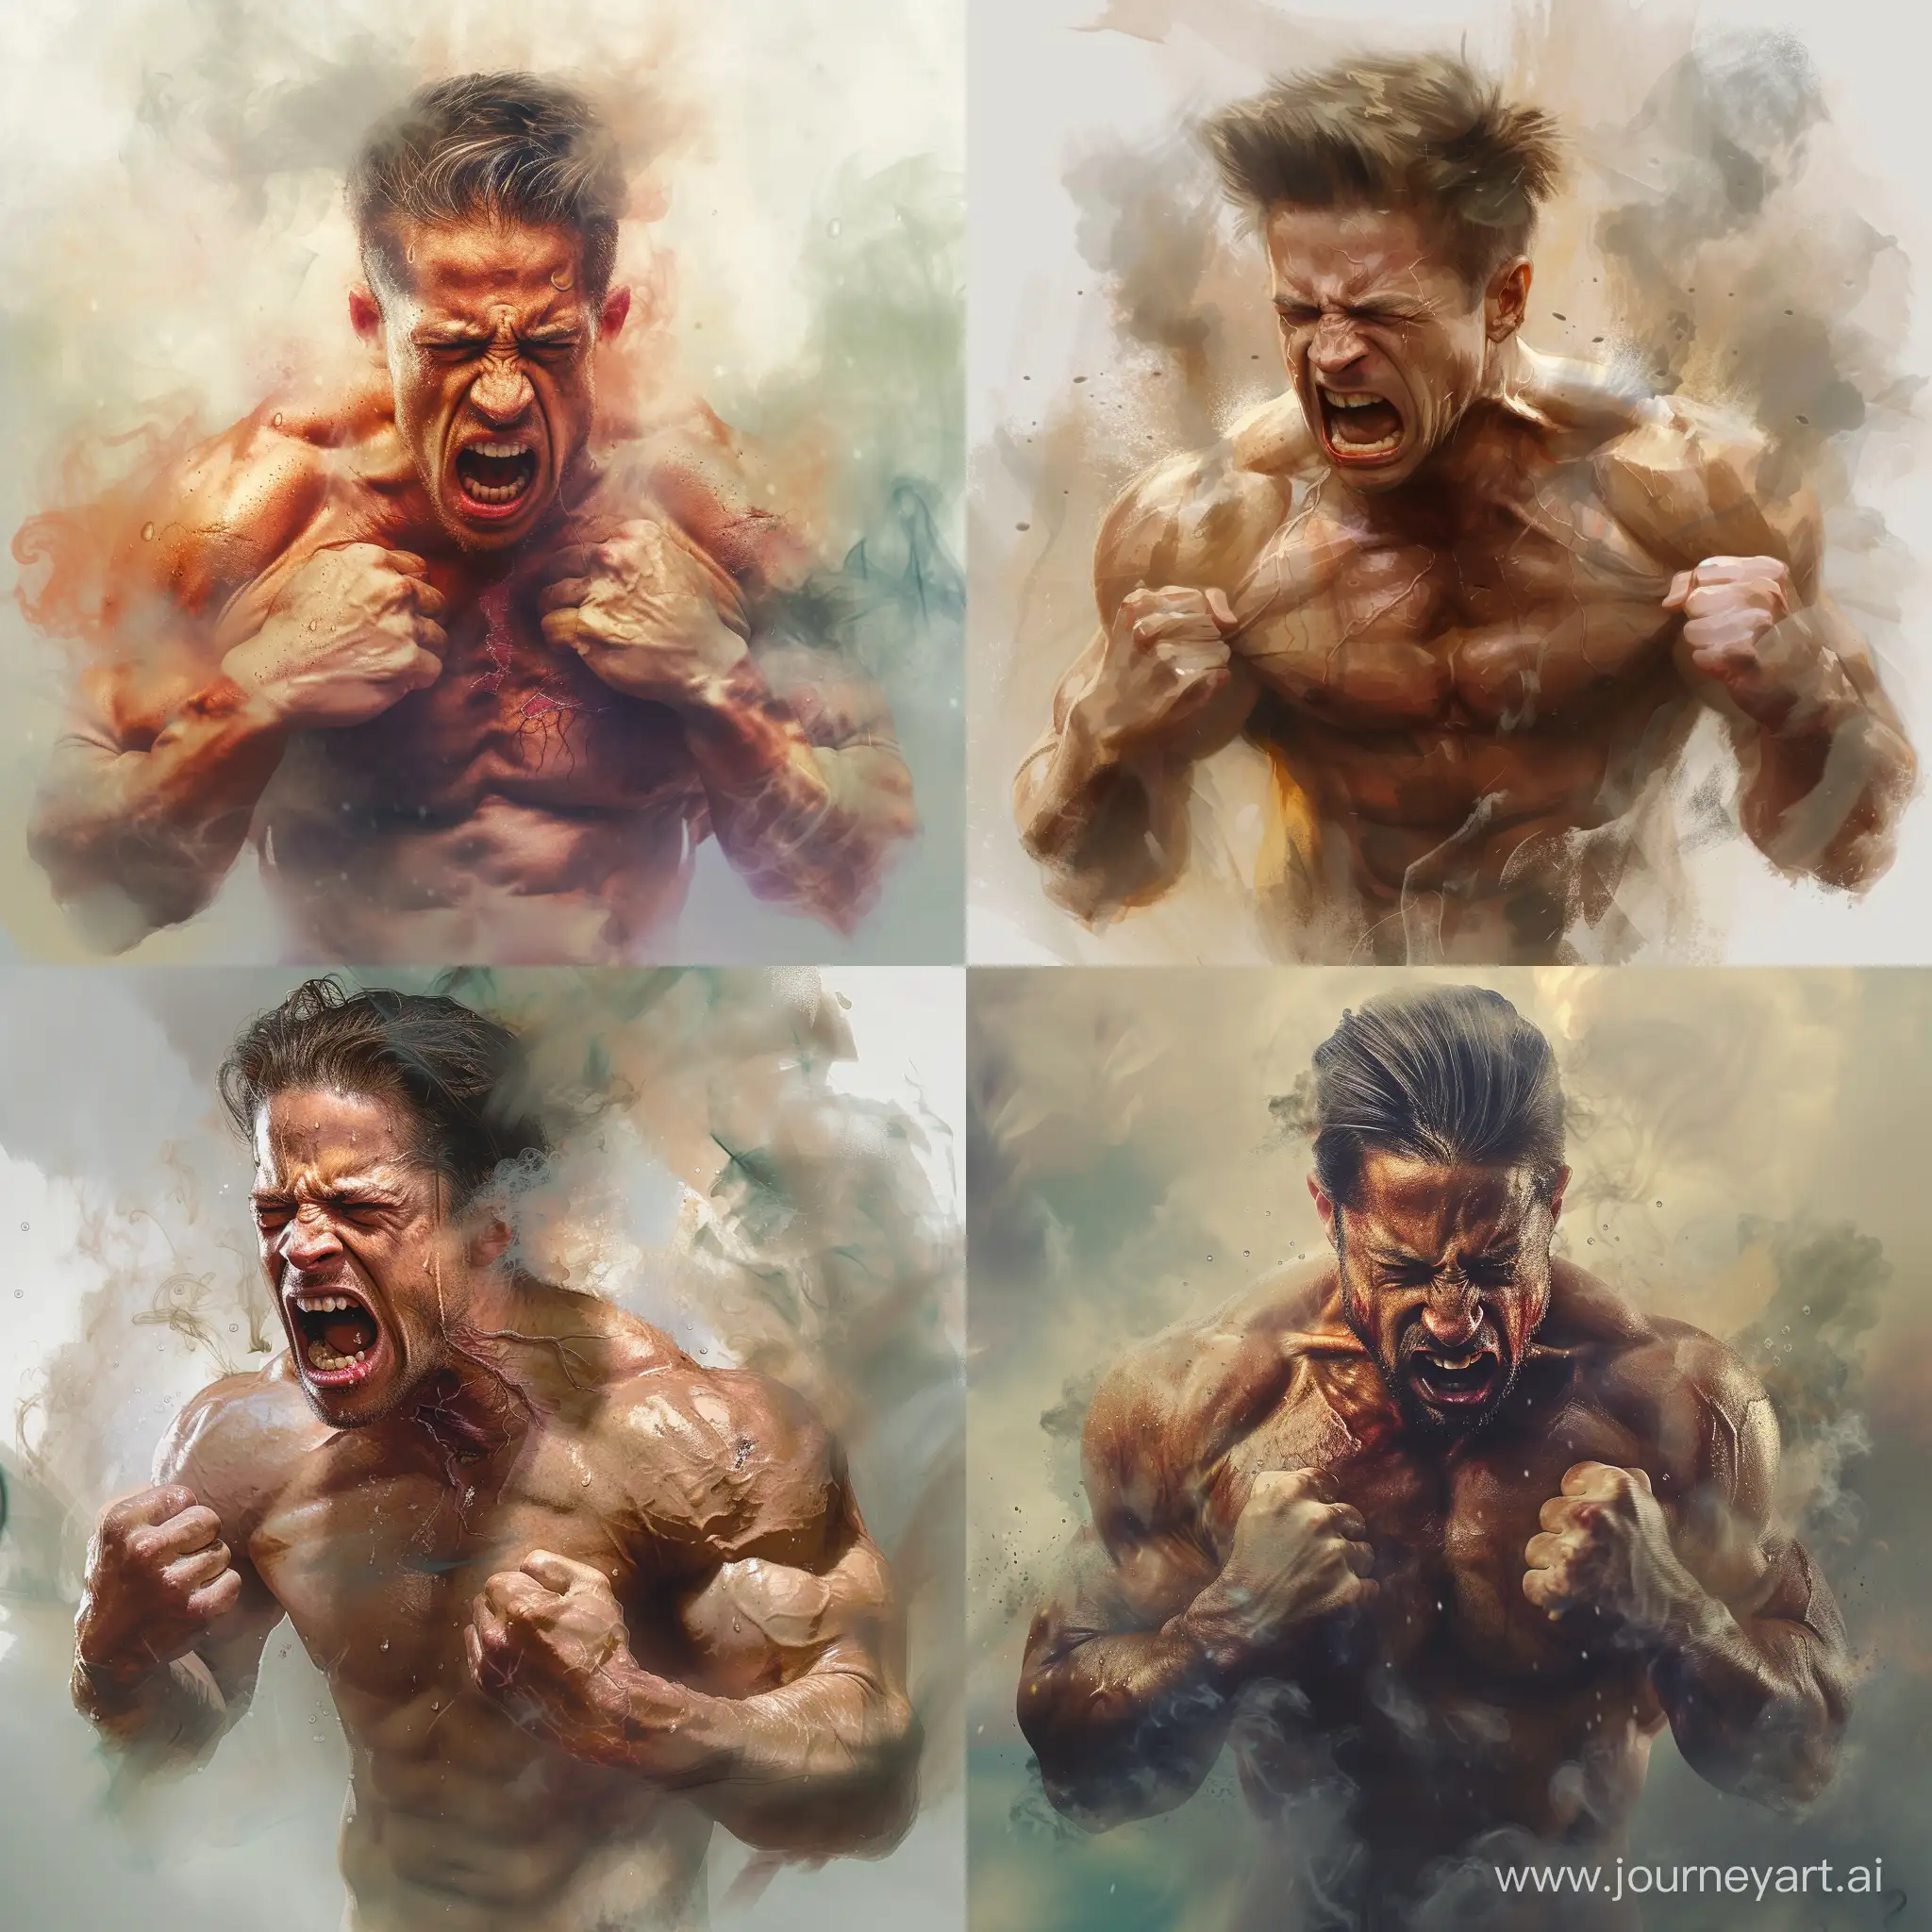 Intense-Anger-Shirtless-Brad-Pitt-Displaying-Furious-Strength